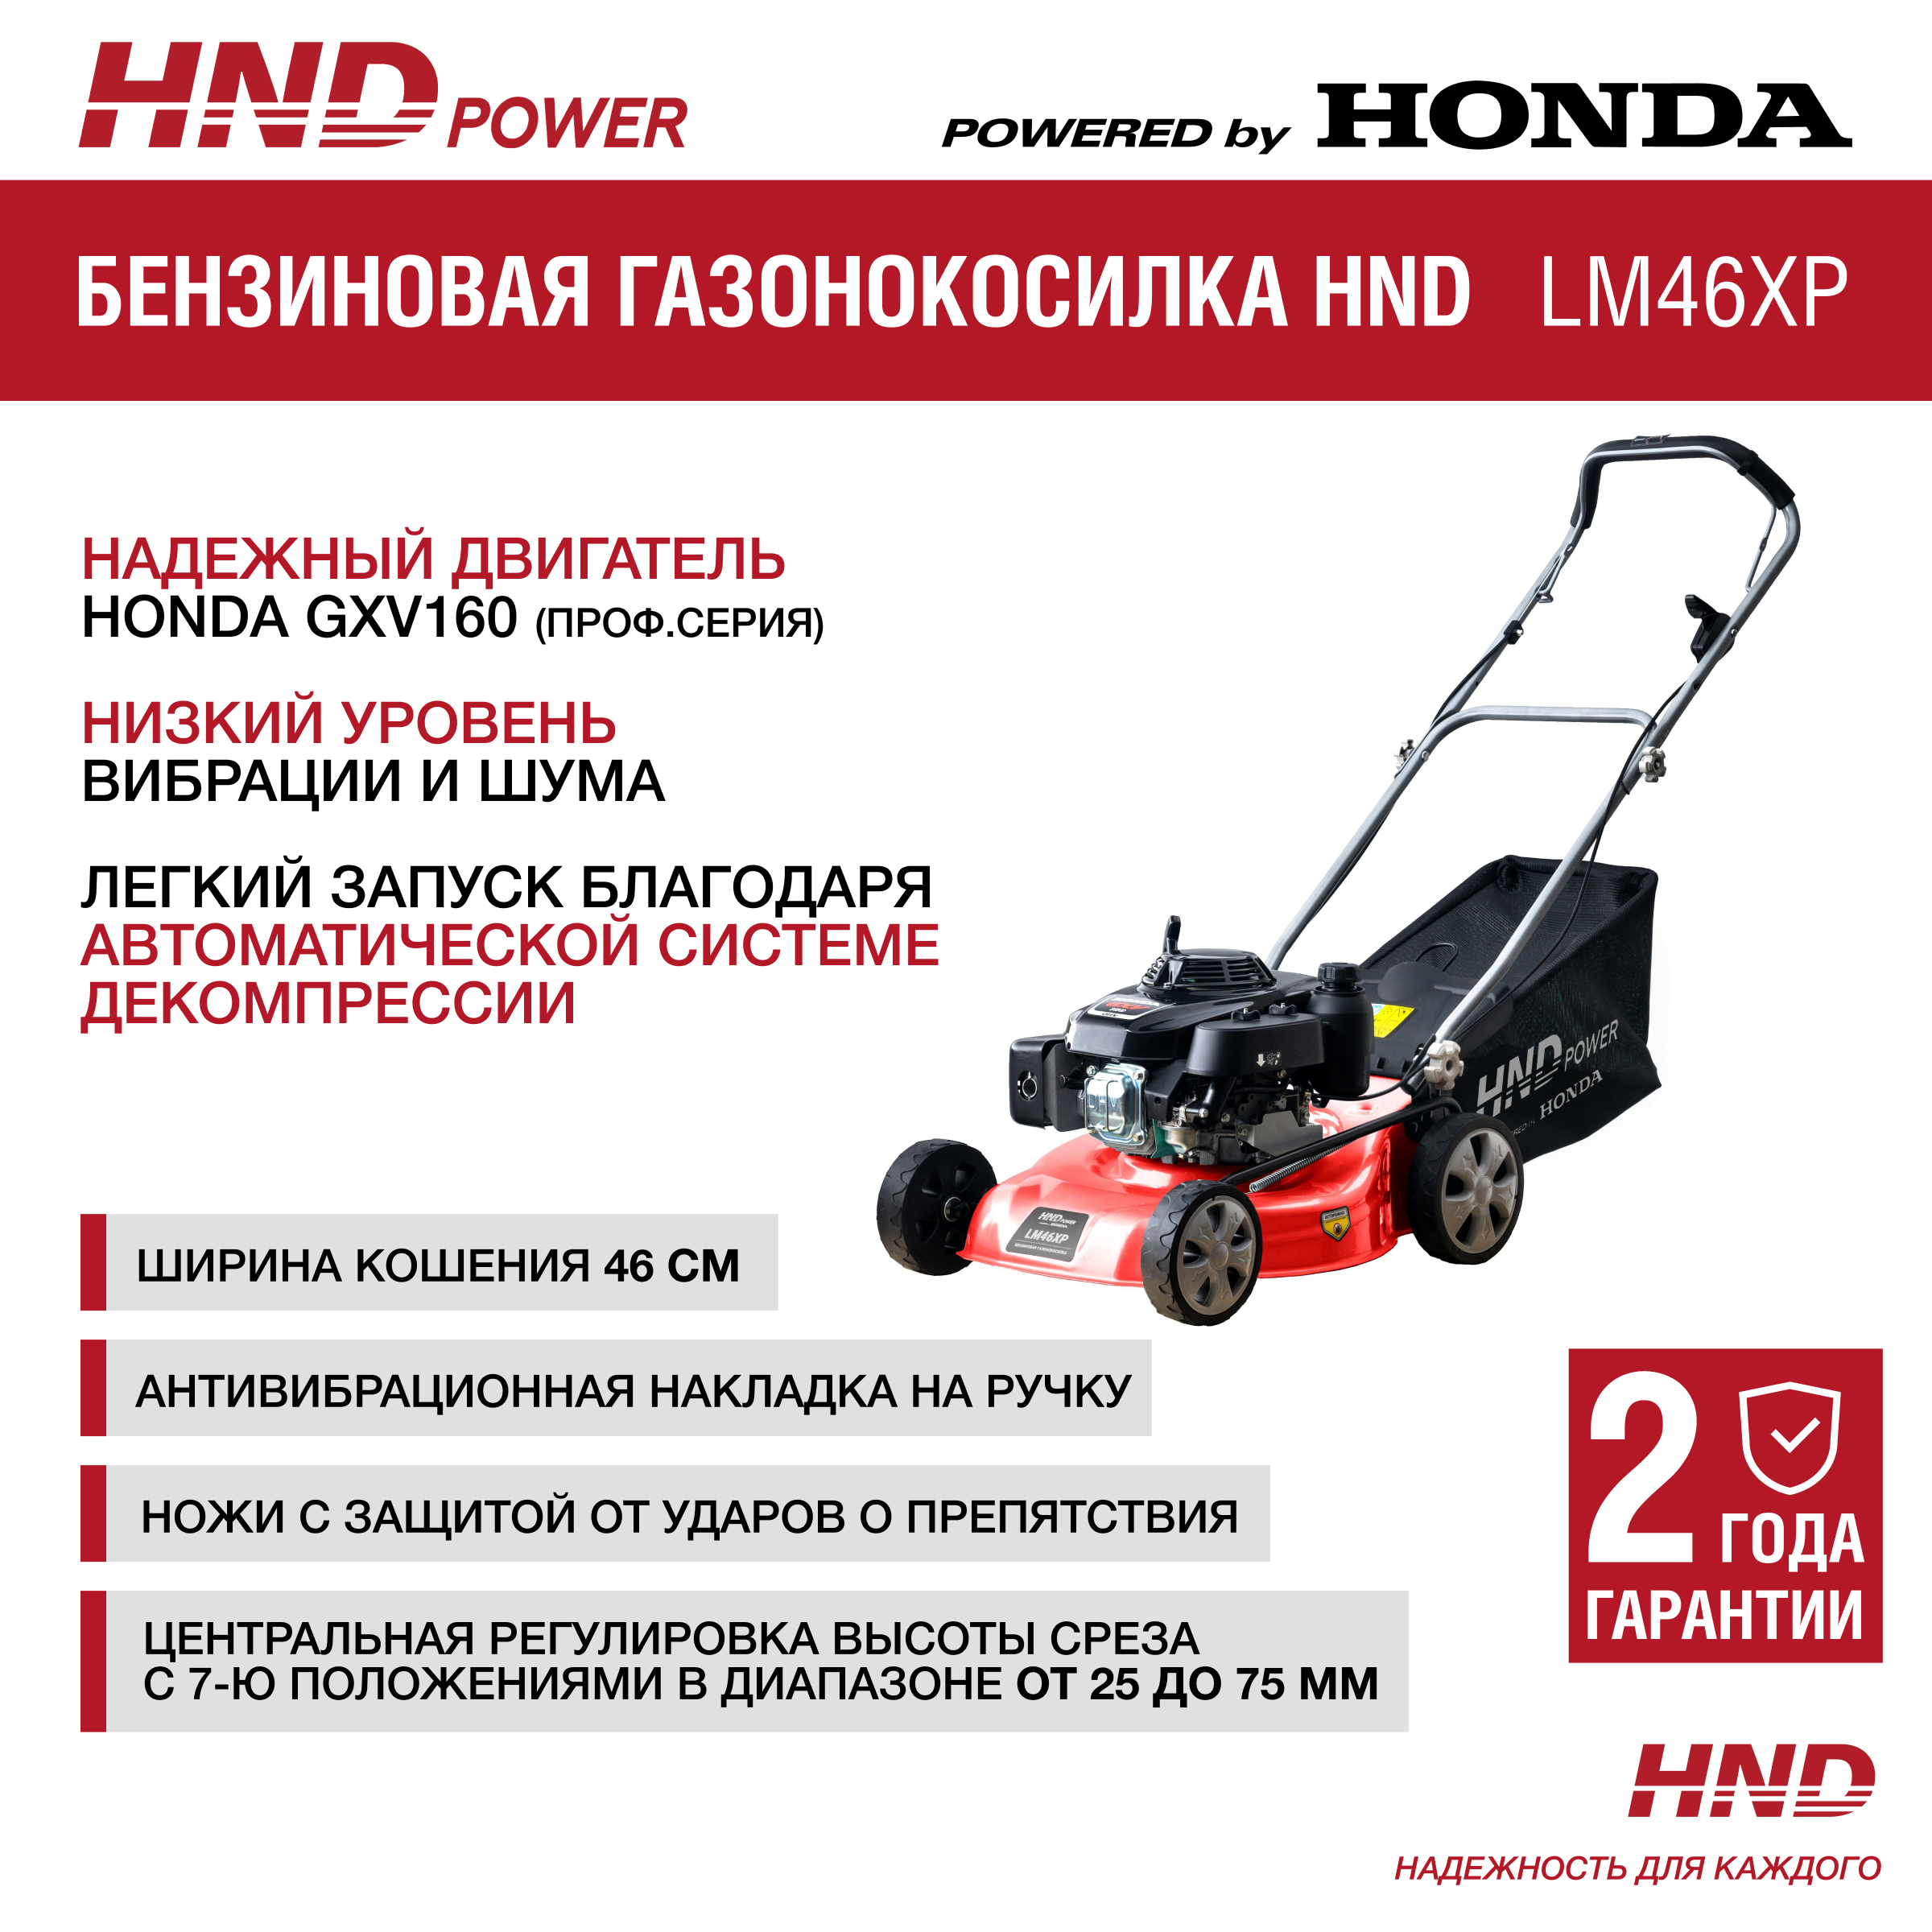 Снегоуборщики HND (Honda) купить в Москве по цене от 79 руб. на официаильном сайте дилера Штиль